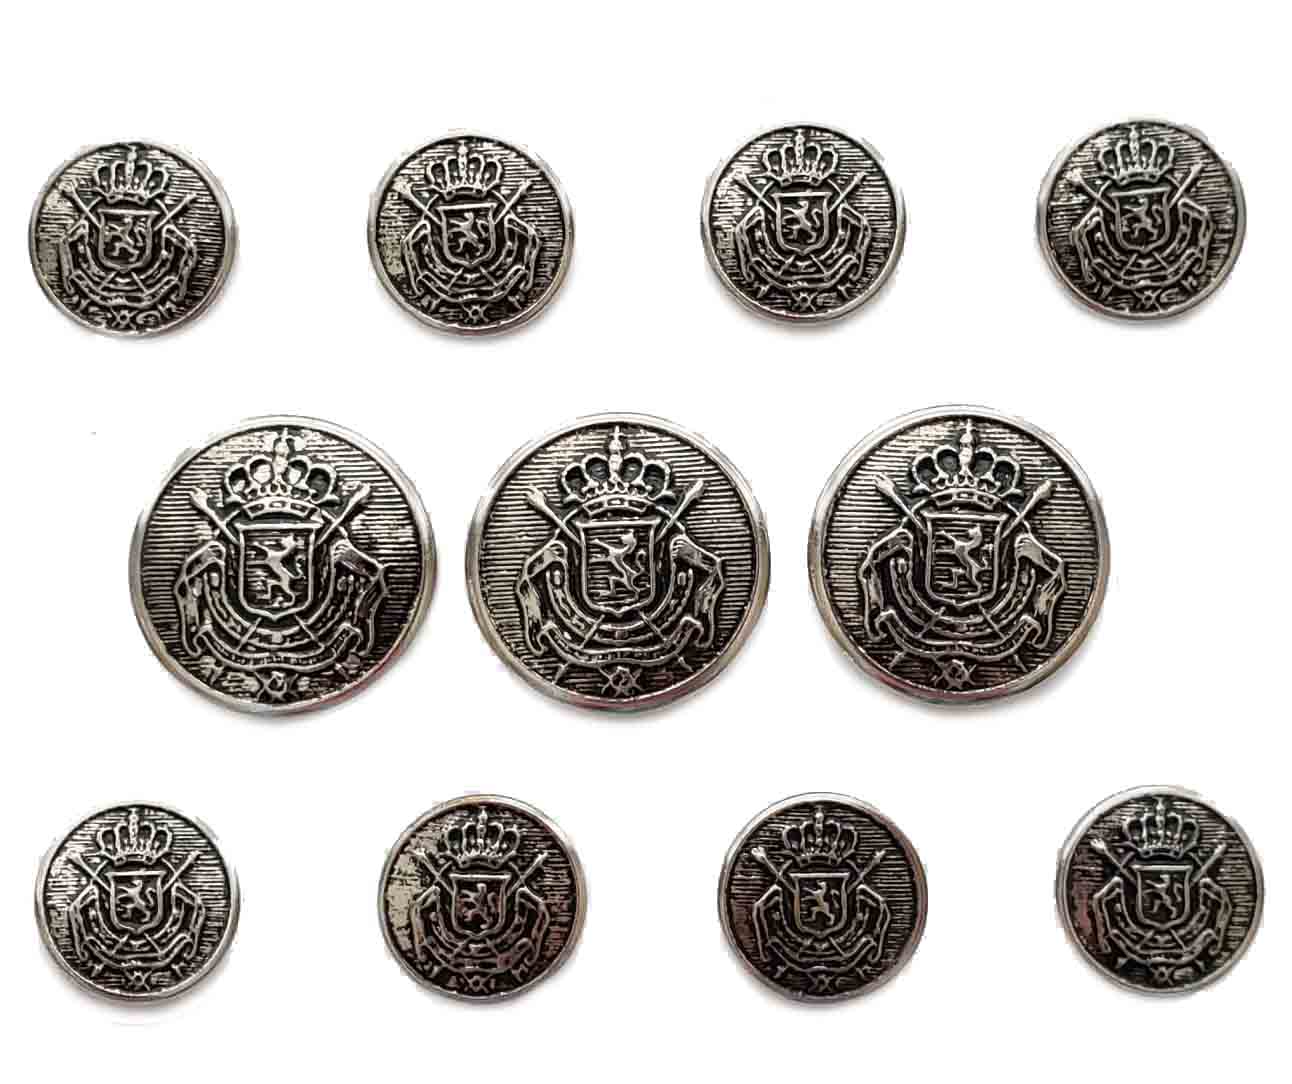 Vintage Michael Kors Blazer Buttons Set Silver Gray Metal Shank Crown Shield Men's